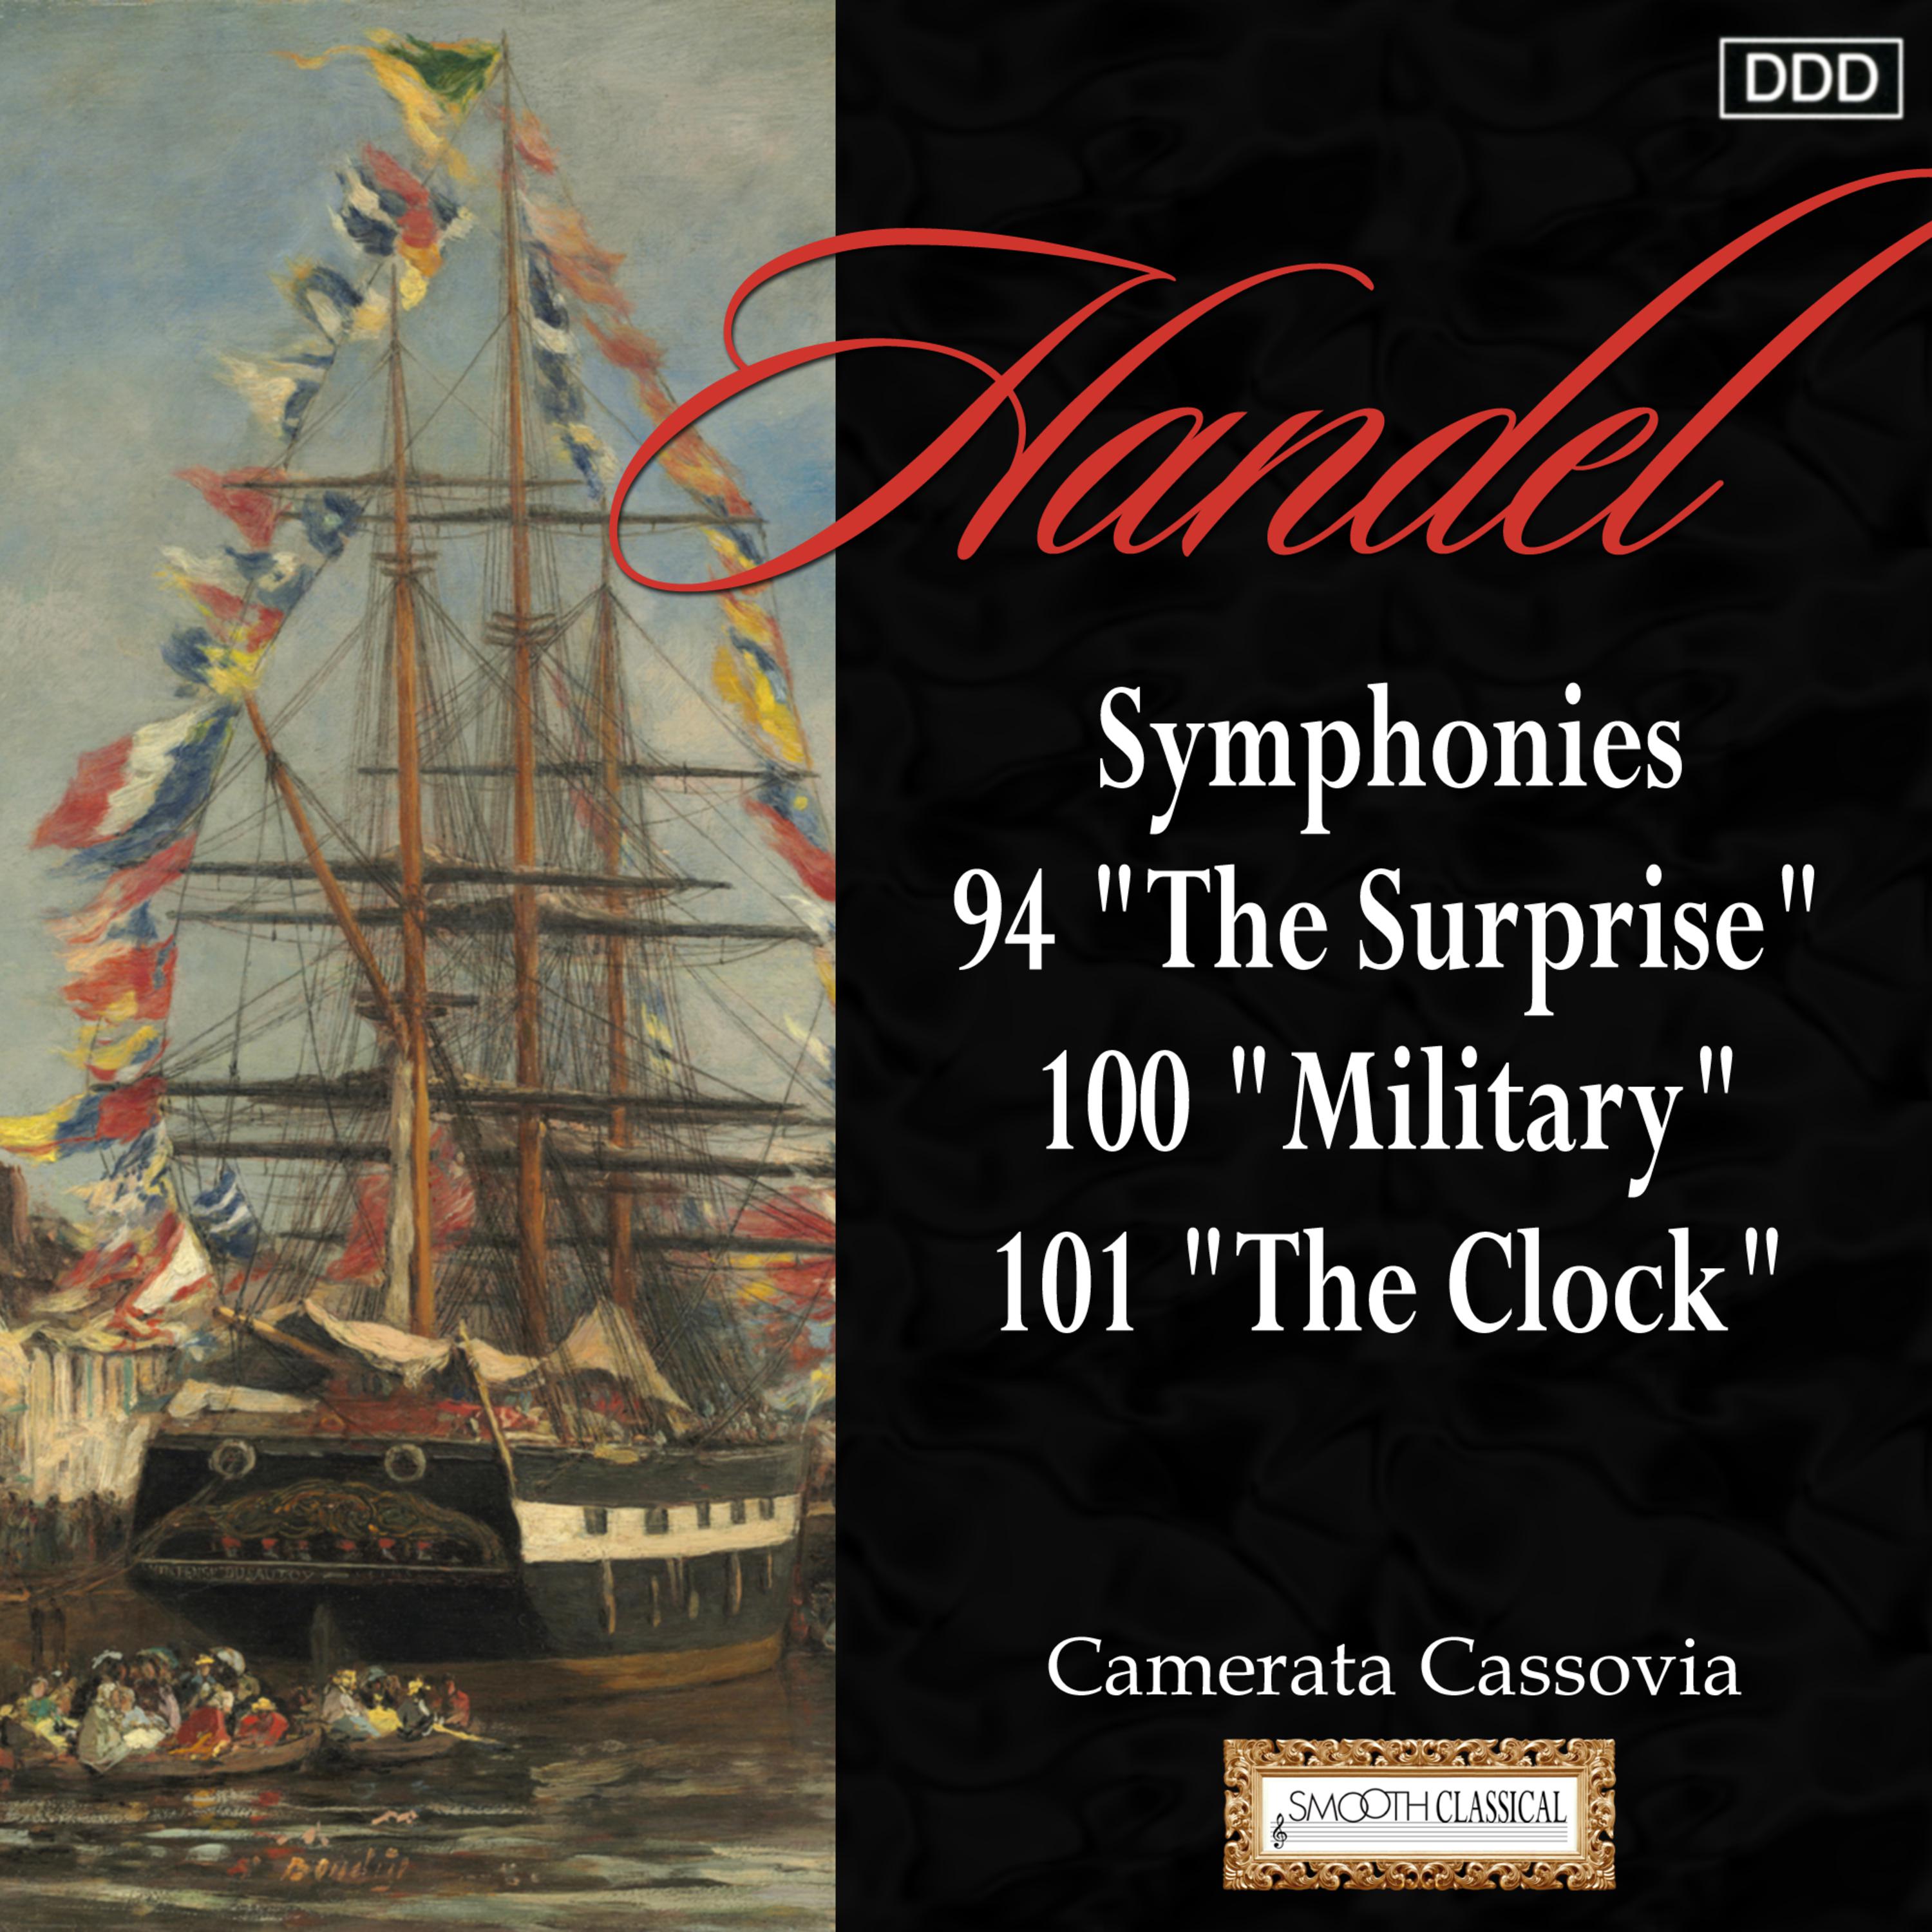 Symphony No. 101 in D Major, Hob. I:101 "The Clock": I. Adagio - Presto